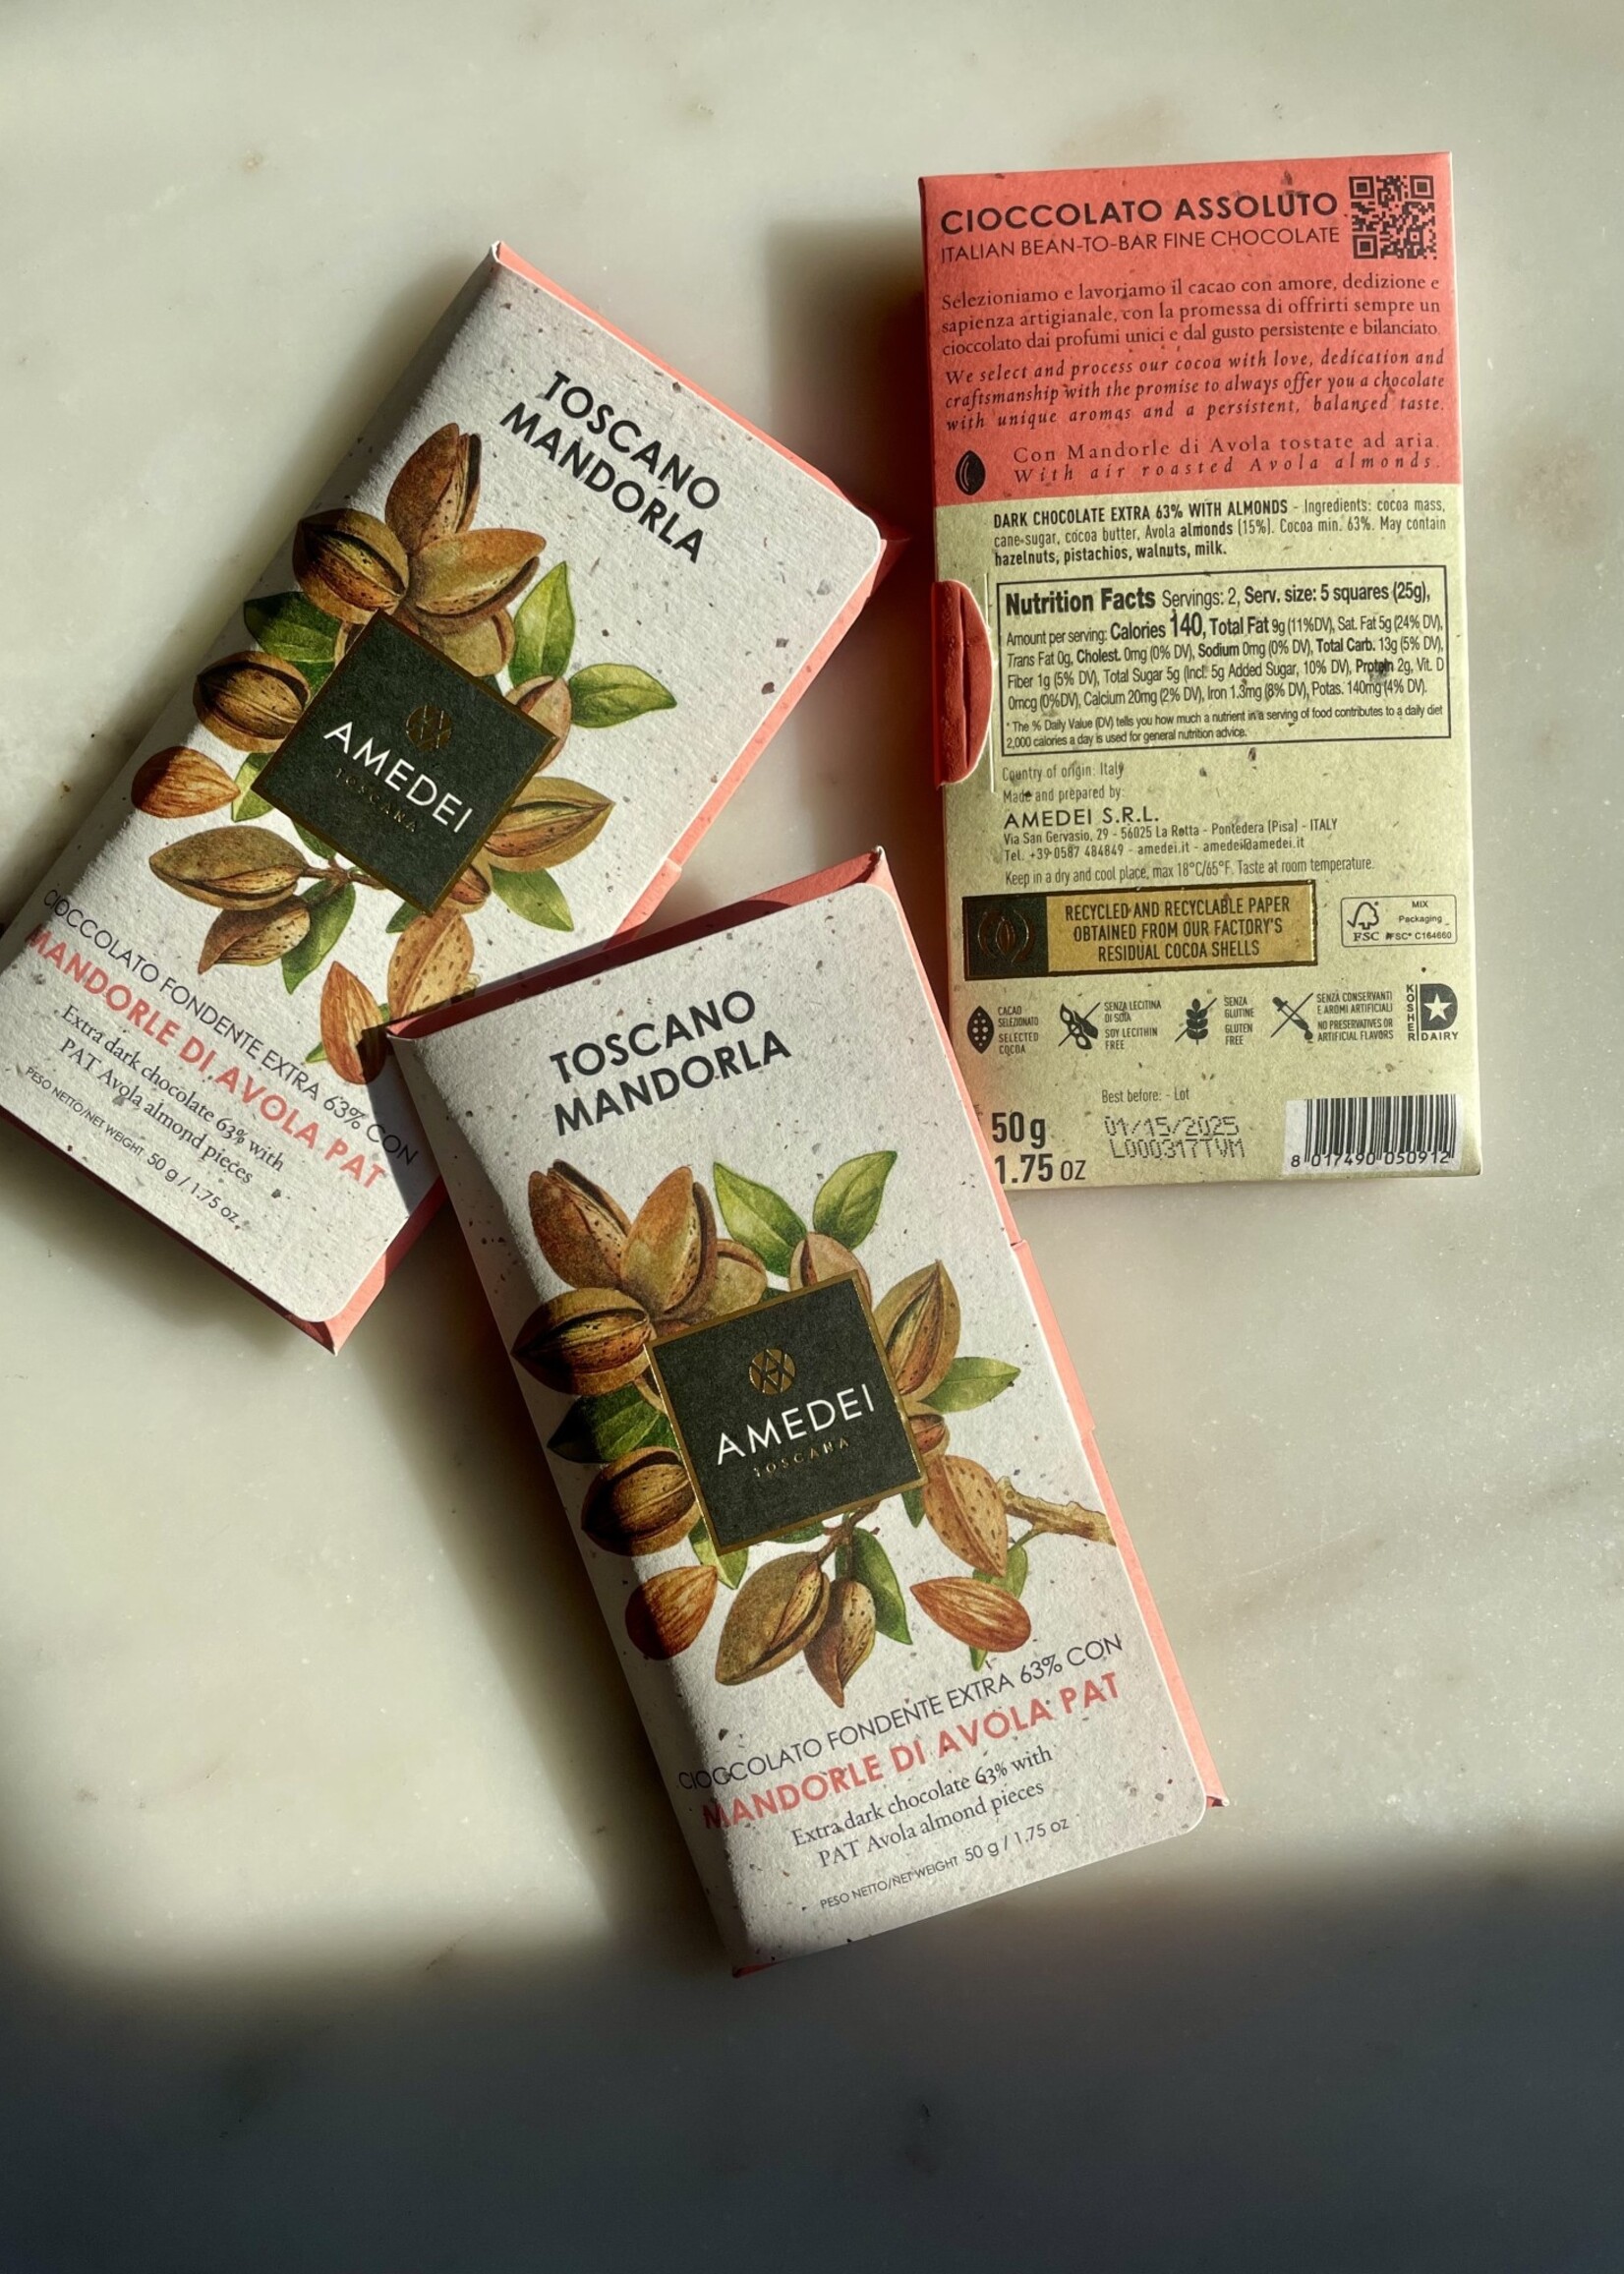 Amedei Mandorle, Dark Chocolate with Almonds (1.75oz) 50g